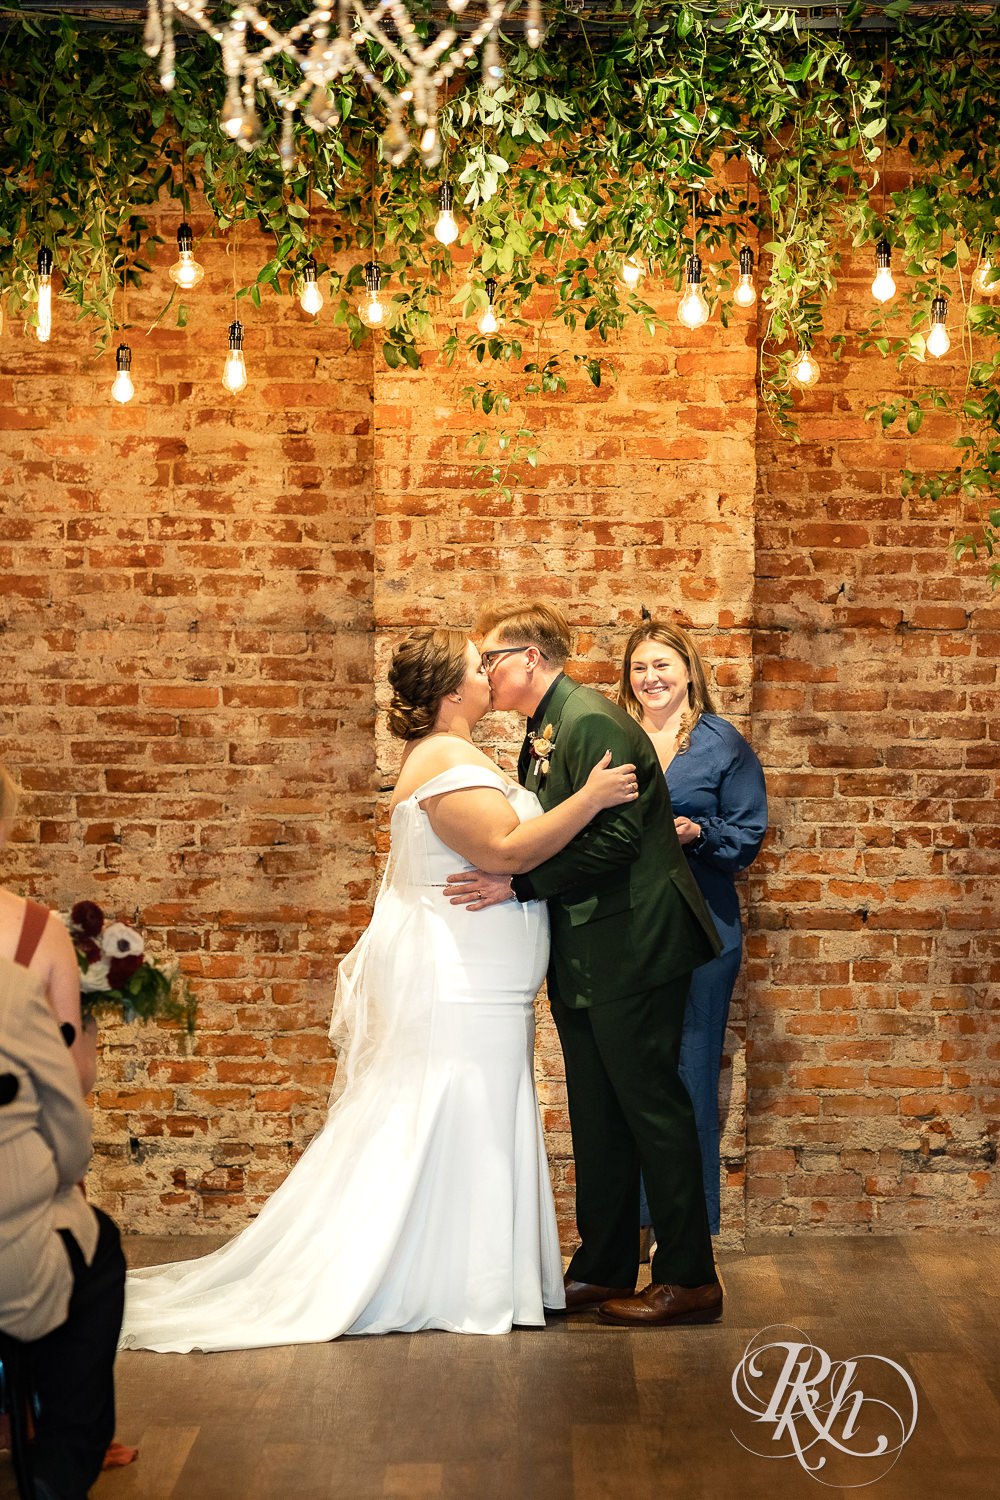 lesbian wedding first kiss under lights